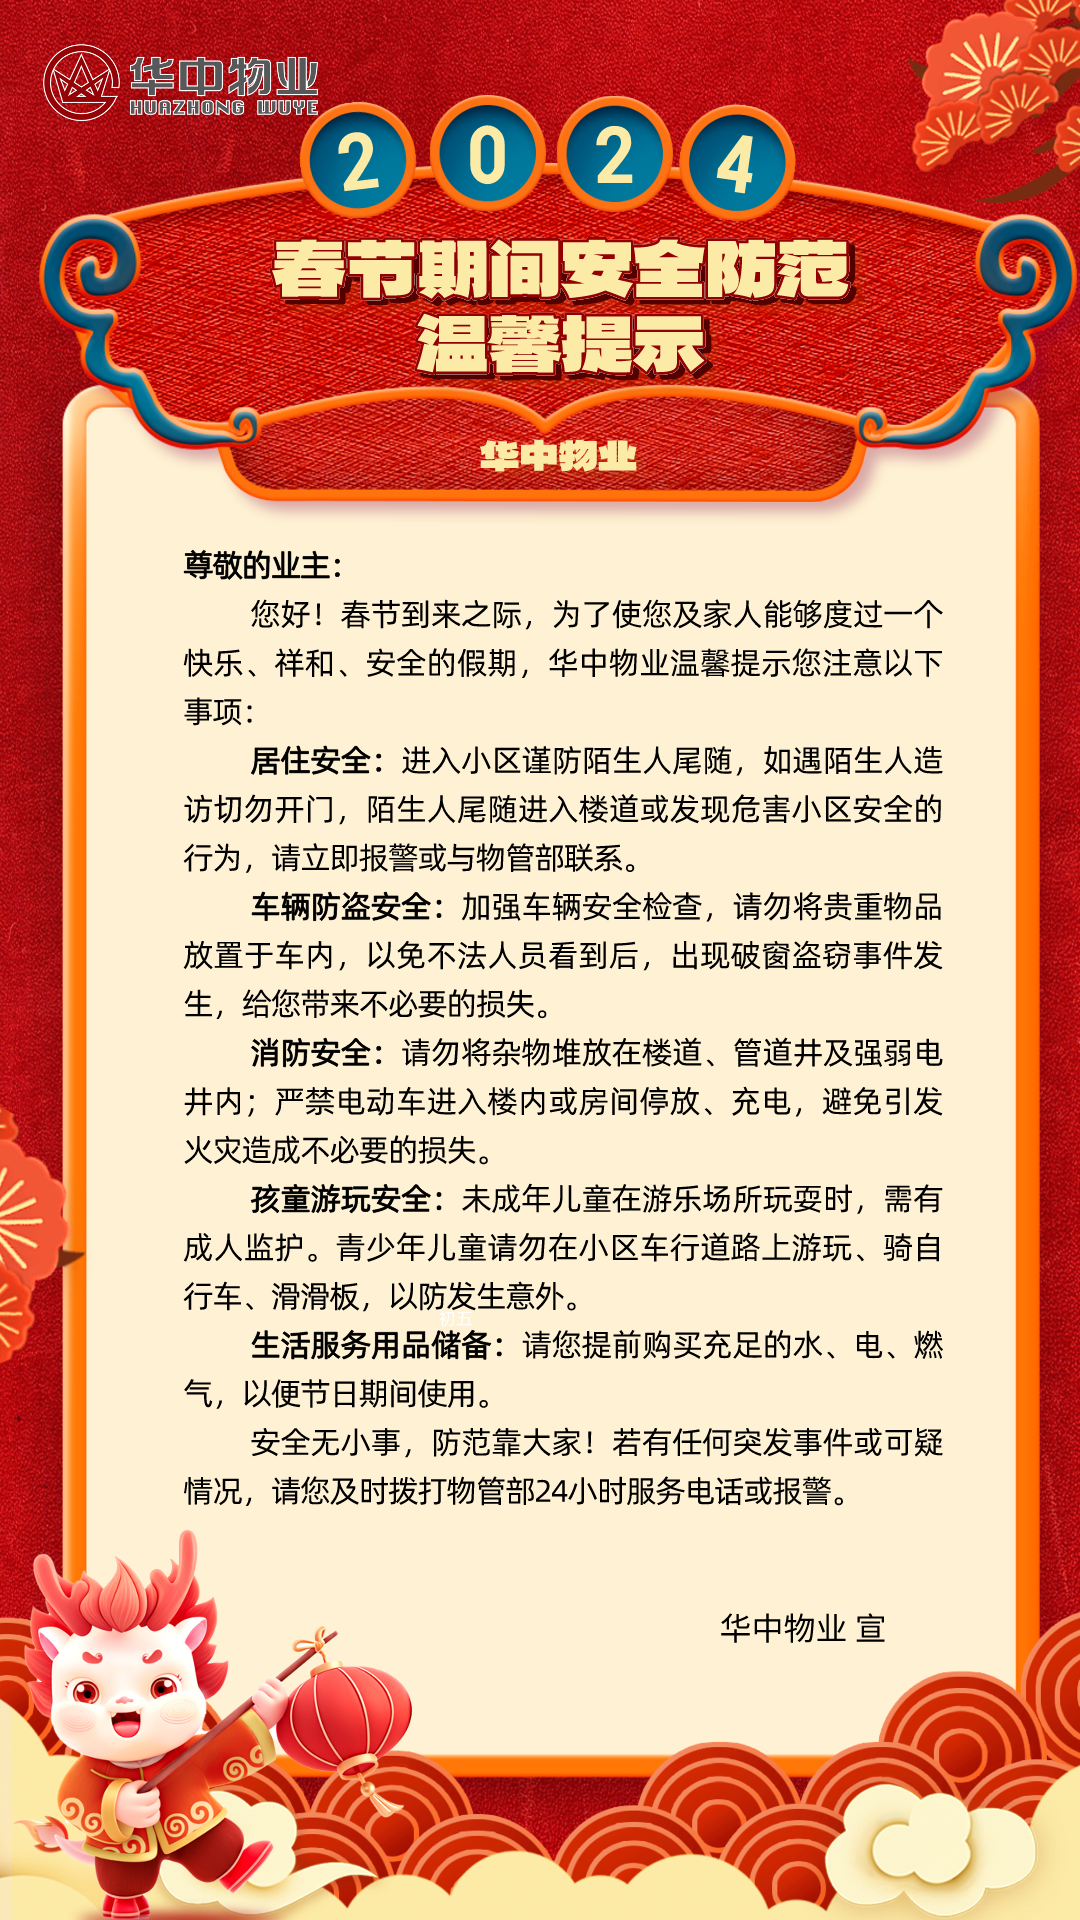 河北保定:华中物业春节期间安全防范温馨提示,请查收